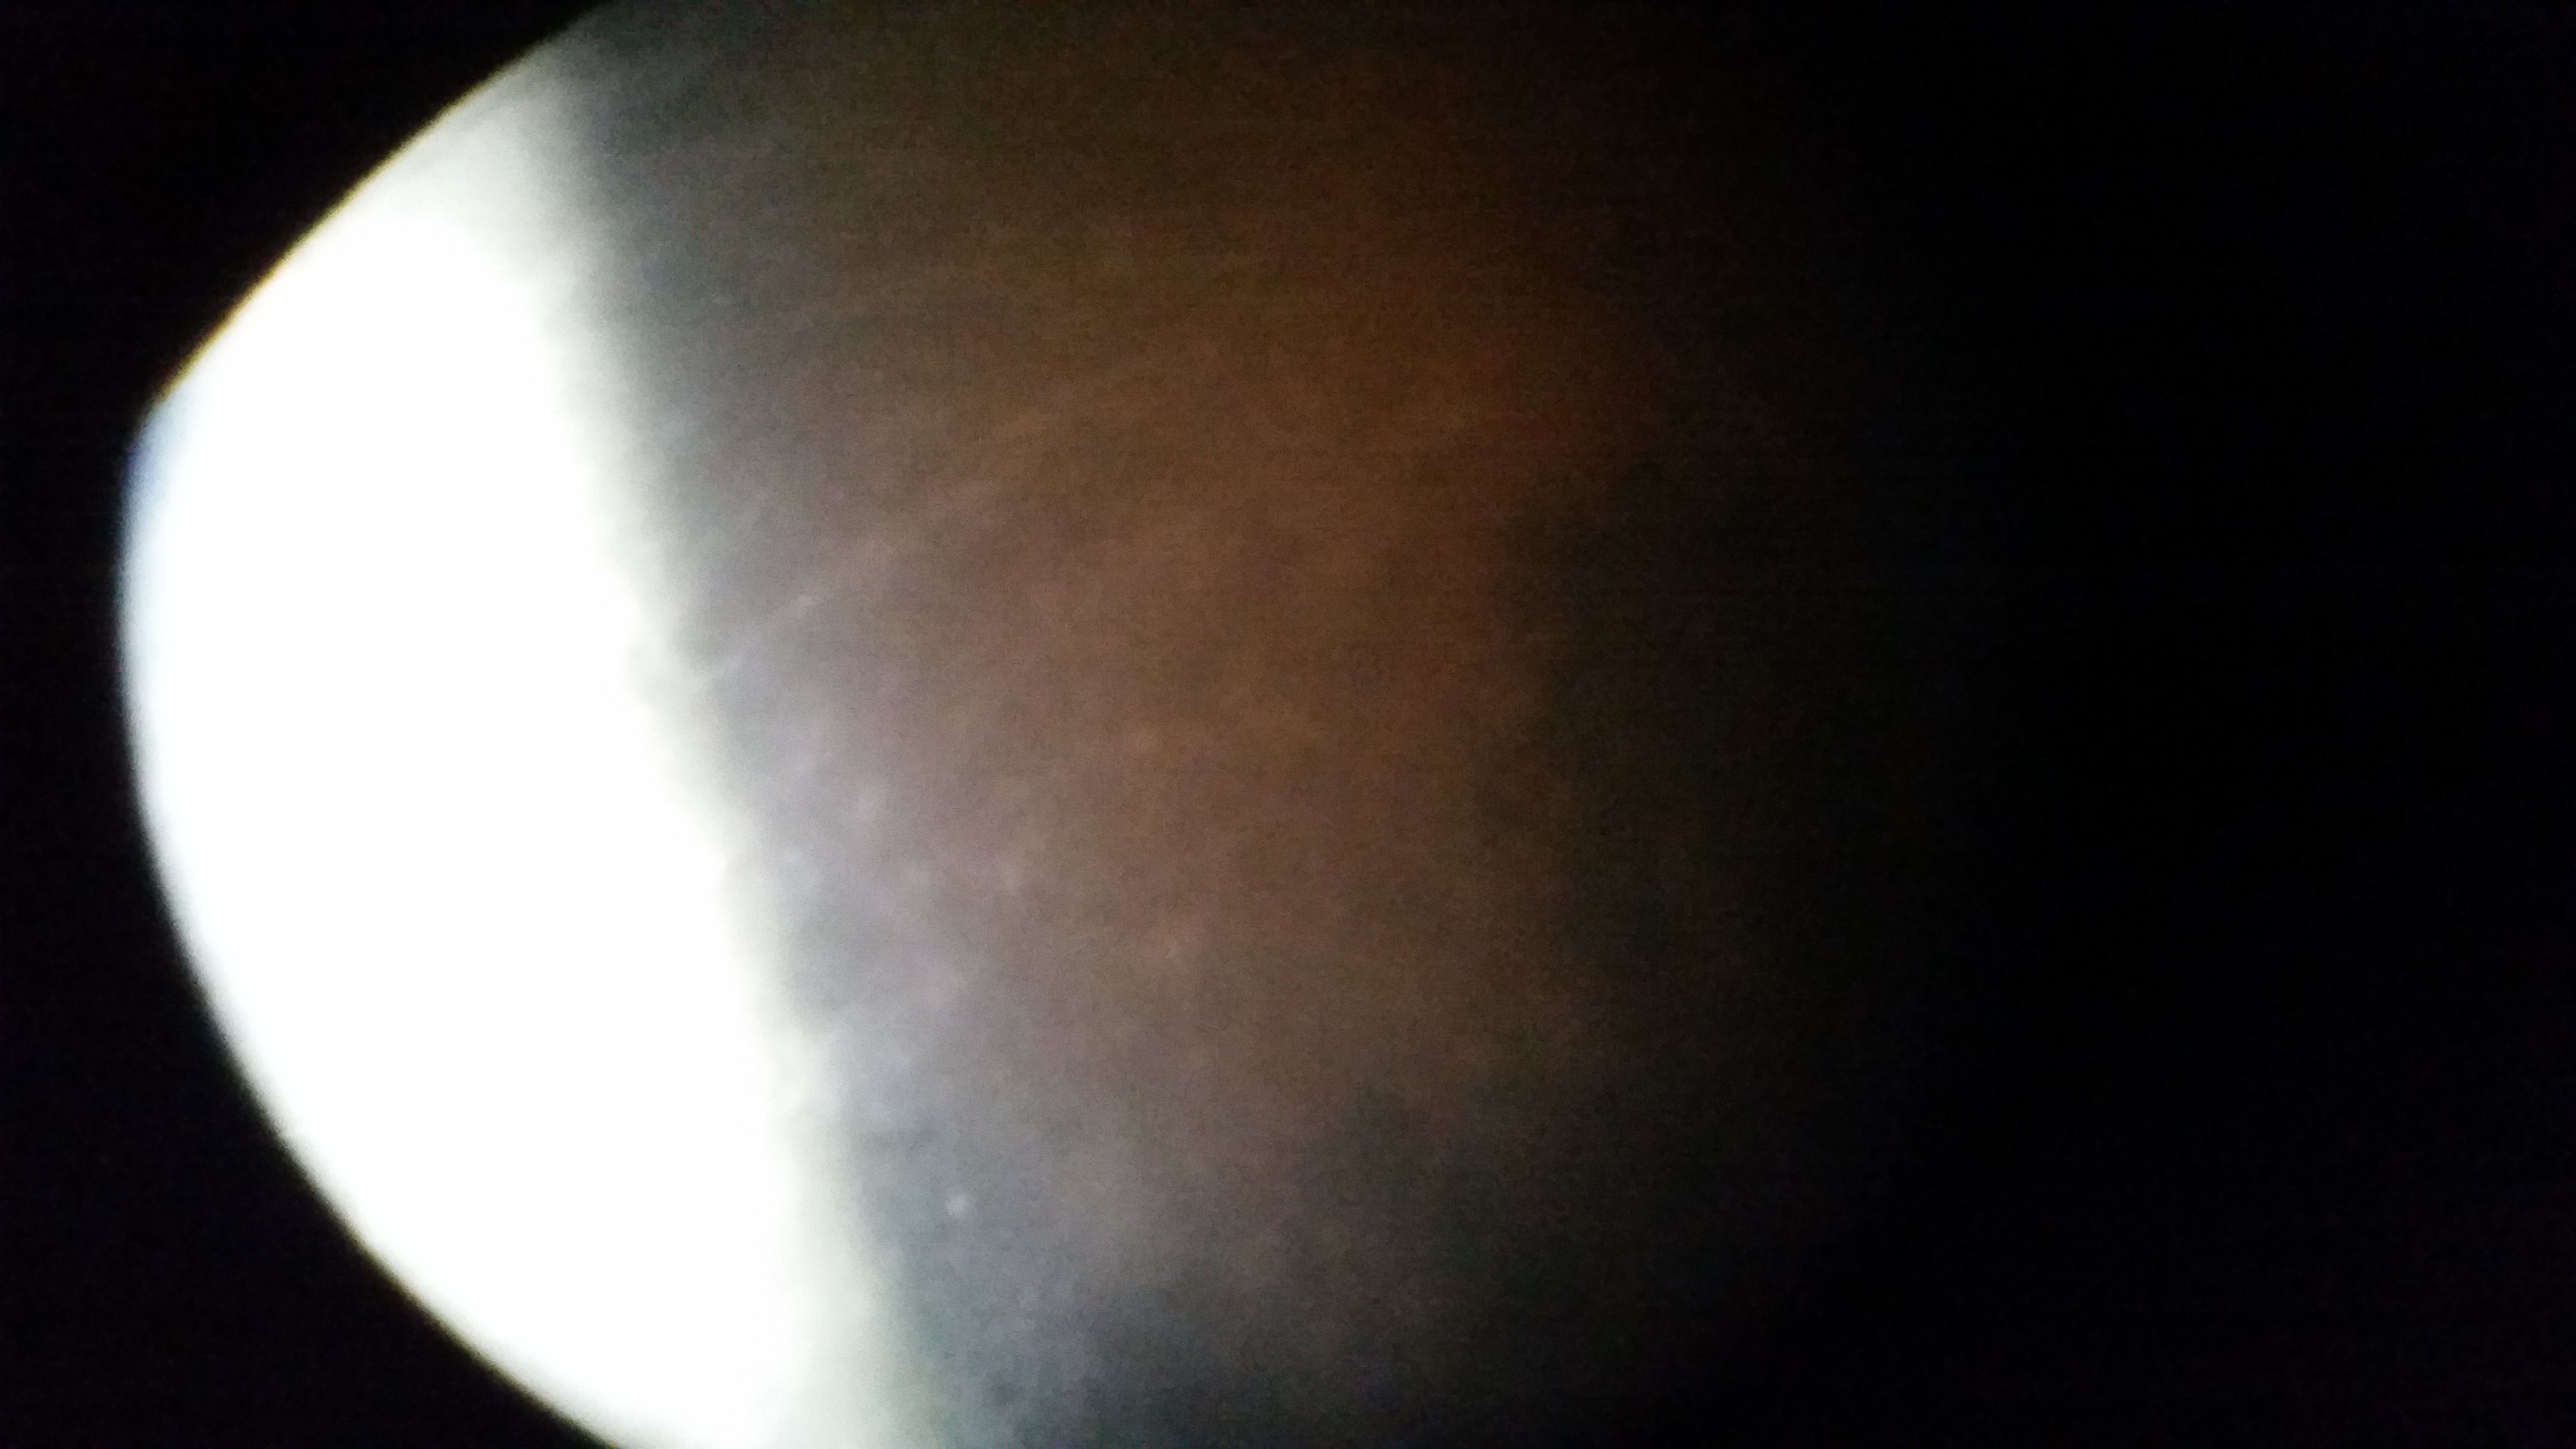 Eclipsed Moon 21.01.2019 seen through SkyWatcher 1200mm telescope